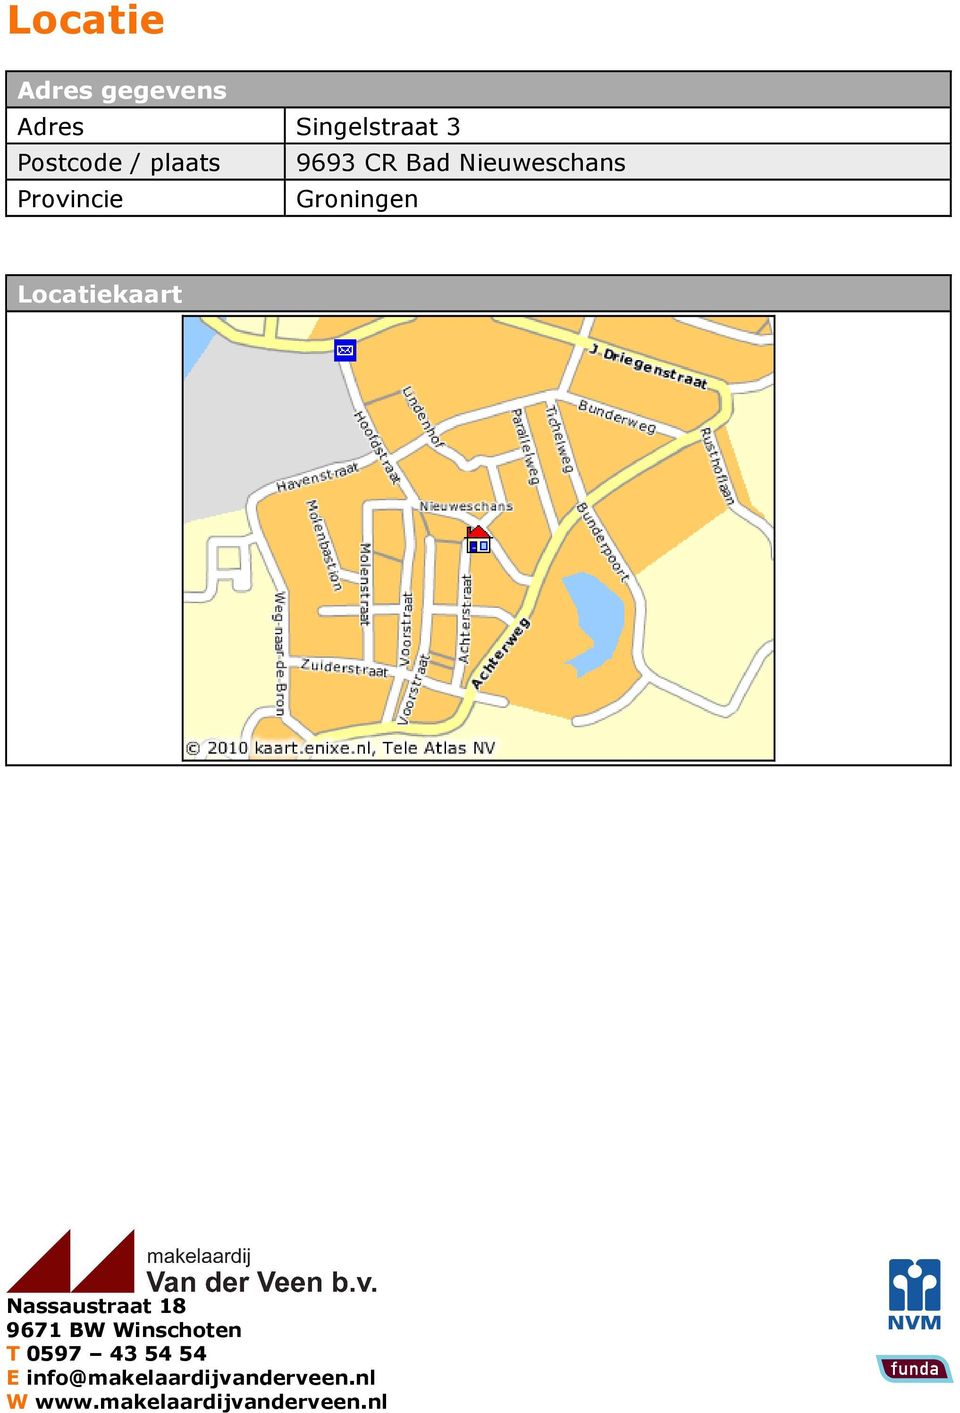 Locatiekaart Nassaustraat 18 9671 BW Winschoten T 0597 43